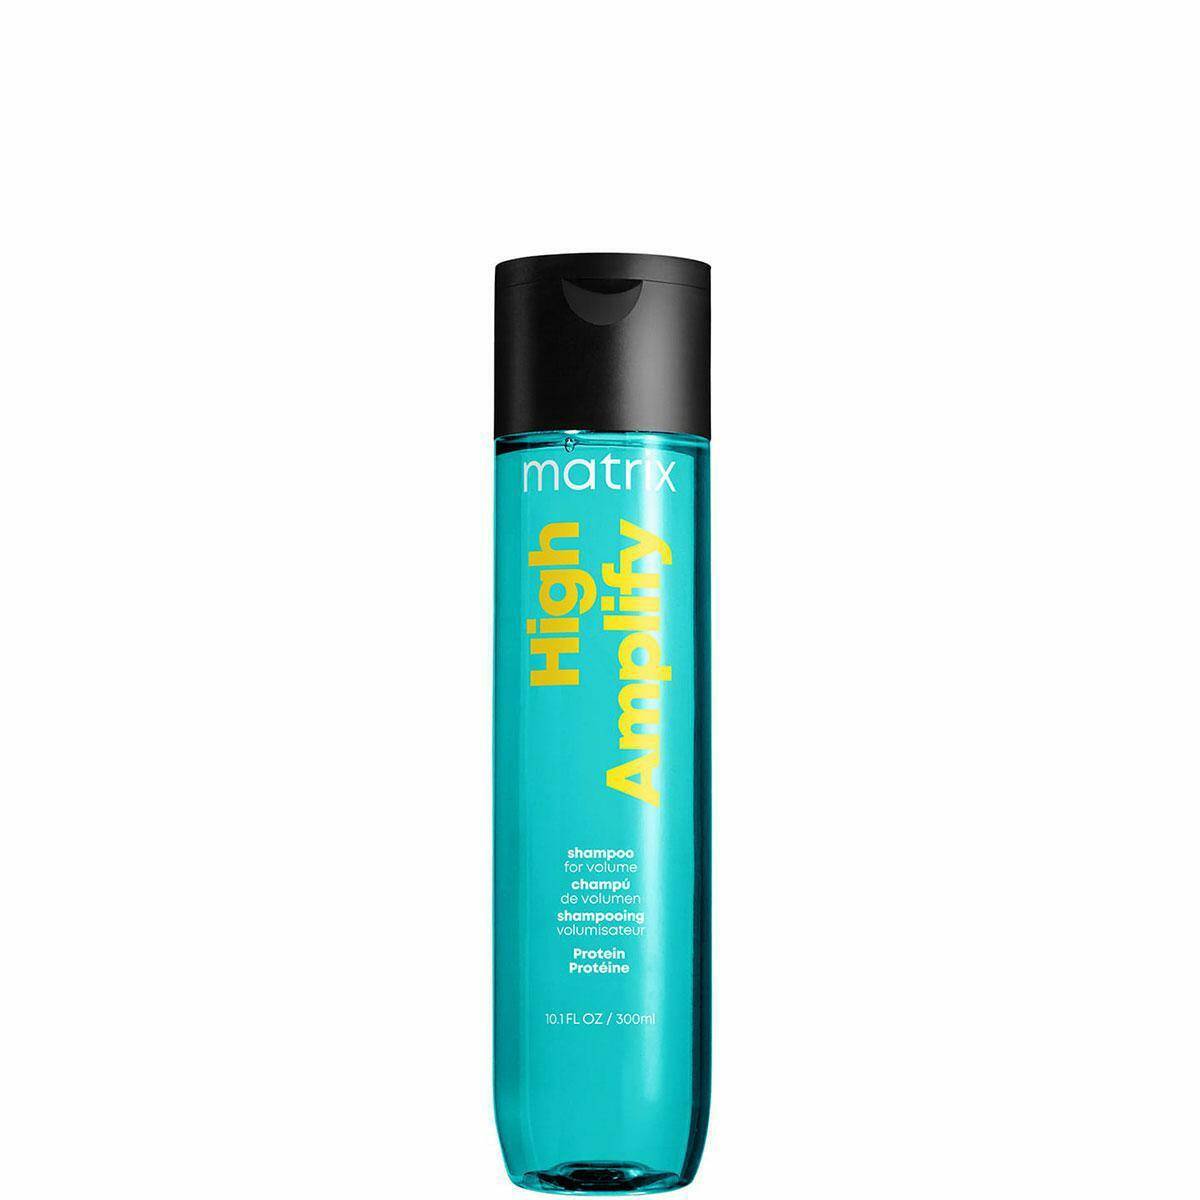 matrix high amplify szampon